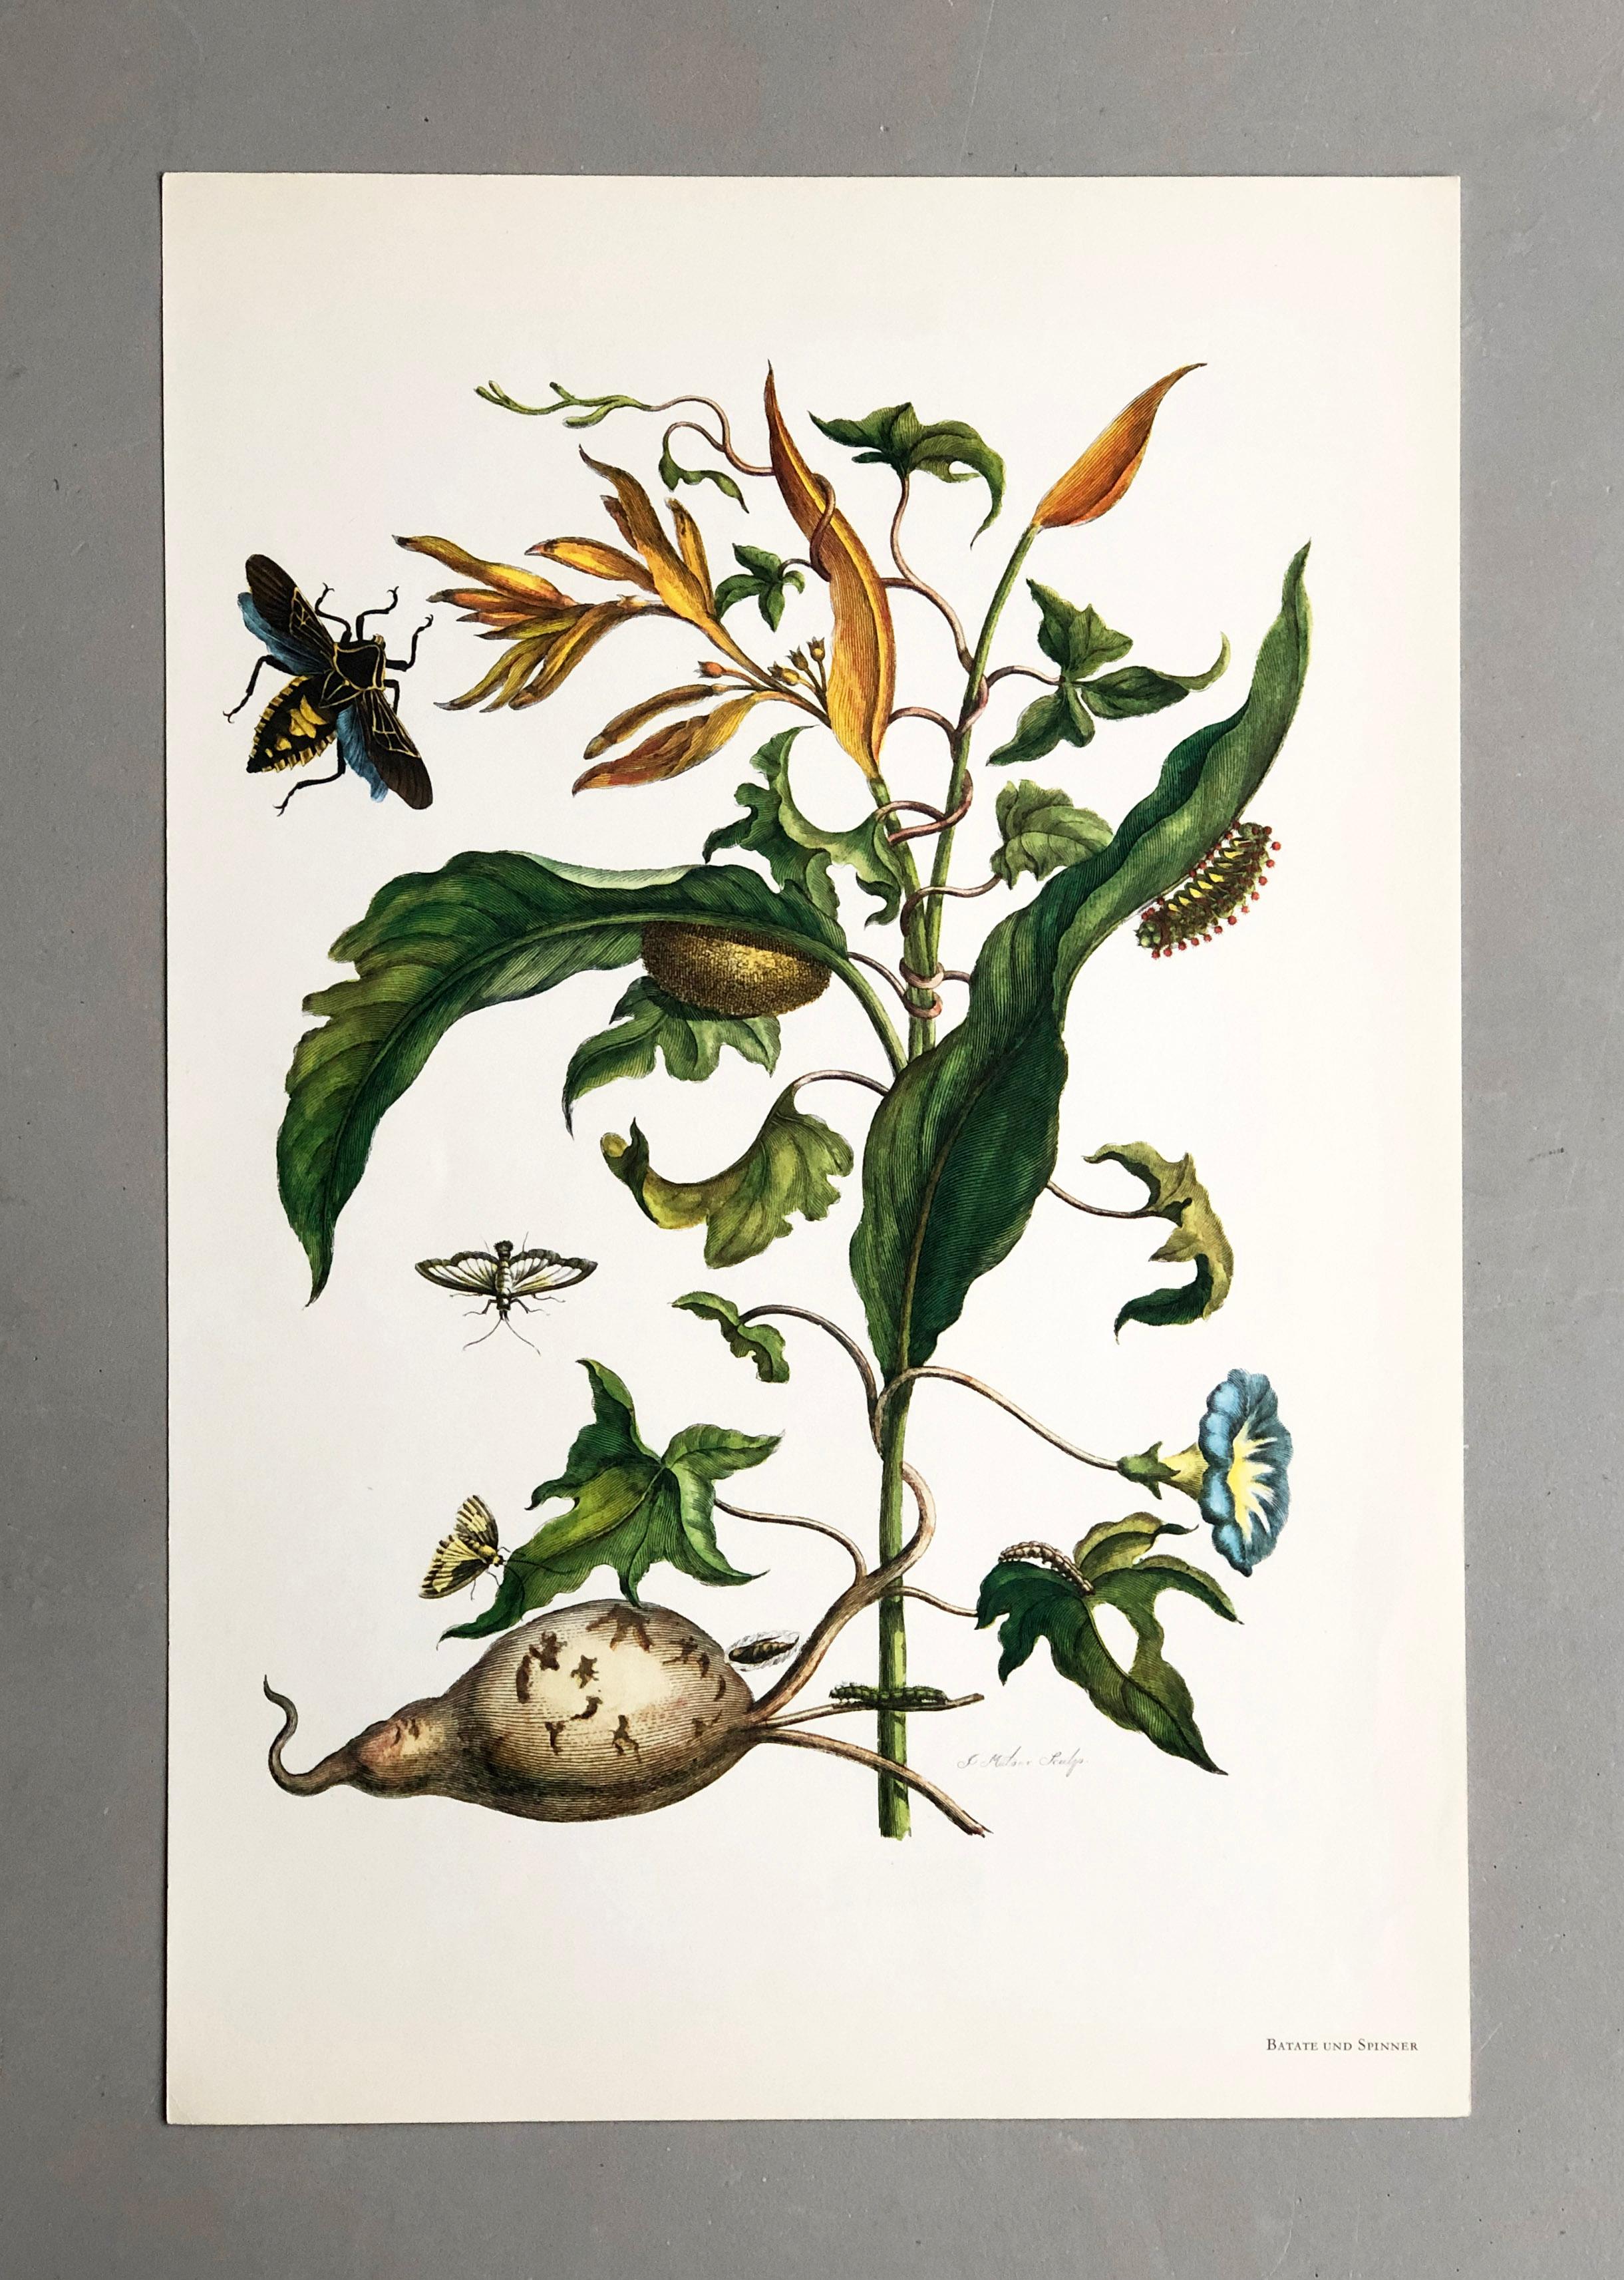 Aus Metamorphosis Insectorum Surinamensium, erstmals veröffentlicht 1705
Kupferstiche von J. Mulder, P. Sluyter (Sluiter) und D. Stoopendaal nach Maria Sybilla Merian.

Dieser Teller ist Teil einer umfassenden Sammlung von 17 Tellern. Sehen Sie sich